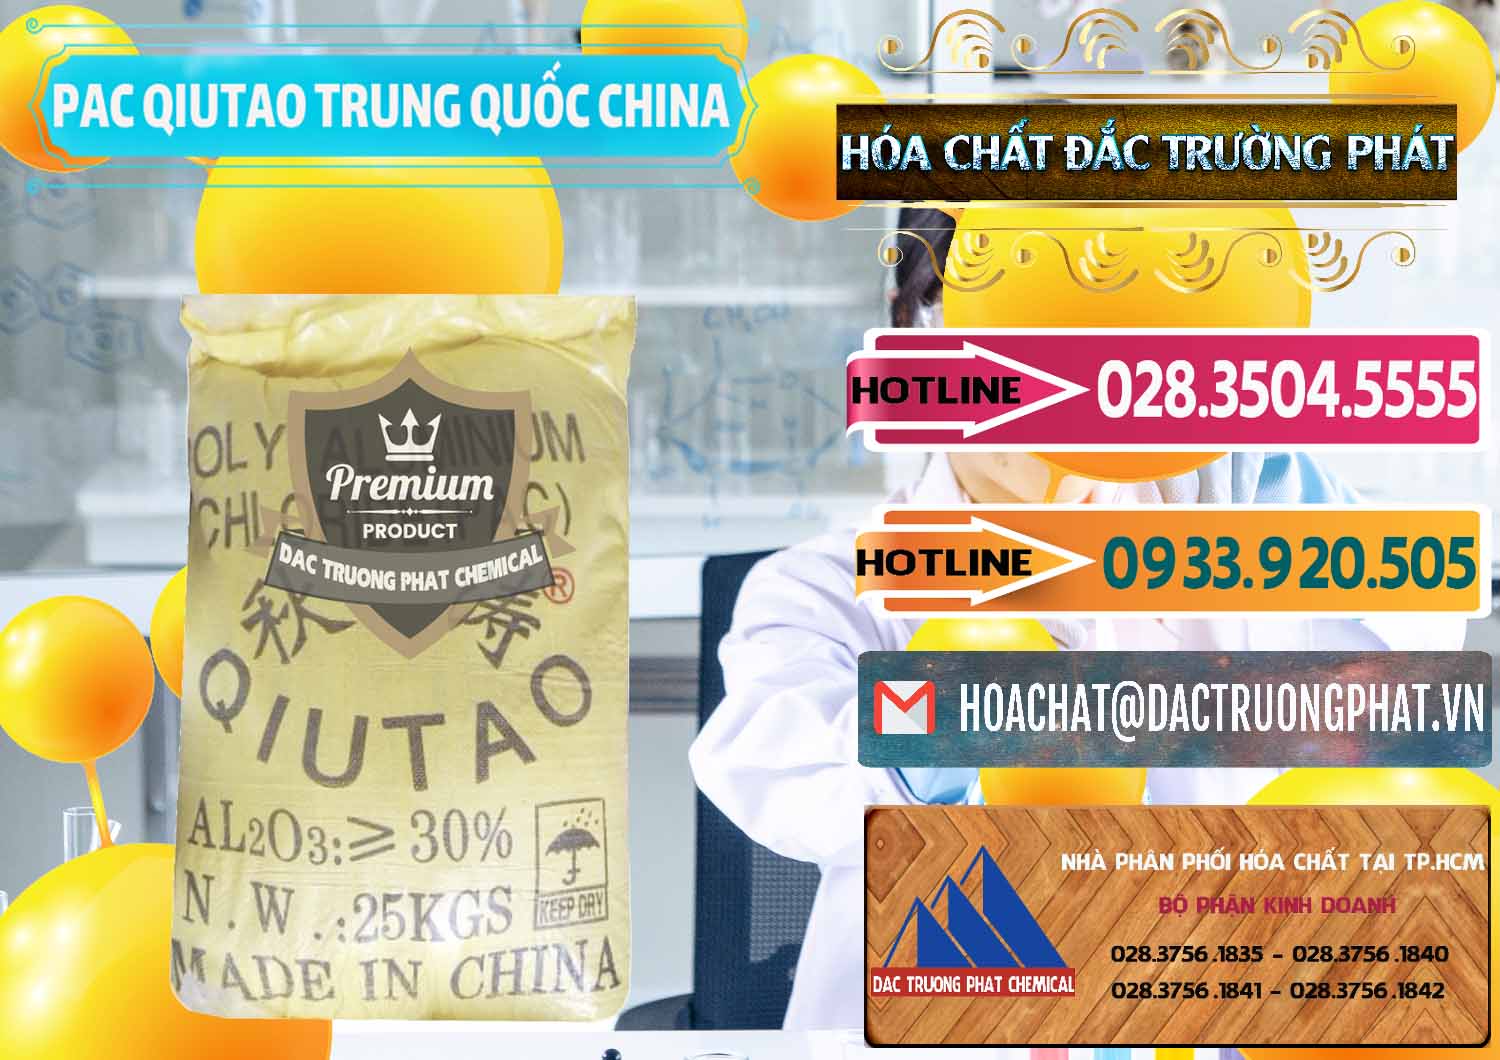 Cty nhập khẩu & bán PAC - Polyaluminium Chloride Qiutao Trung Quốc China - 0267 - Cung cấp - phân phối hóa chất tại TP.HCM - dactruongphat.vn